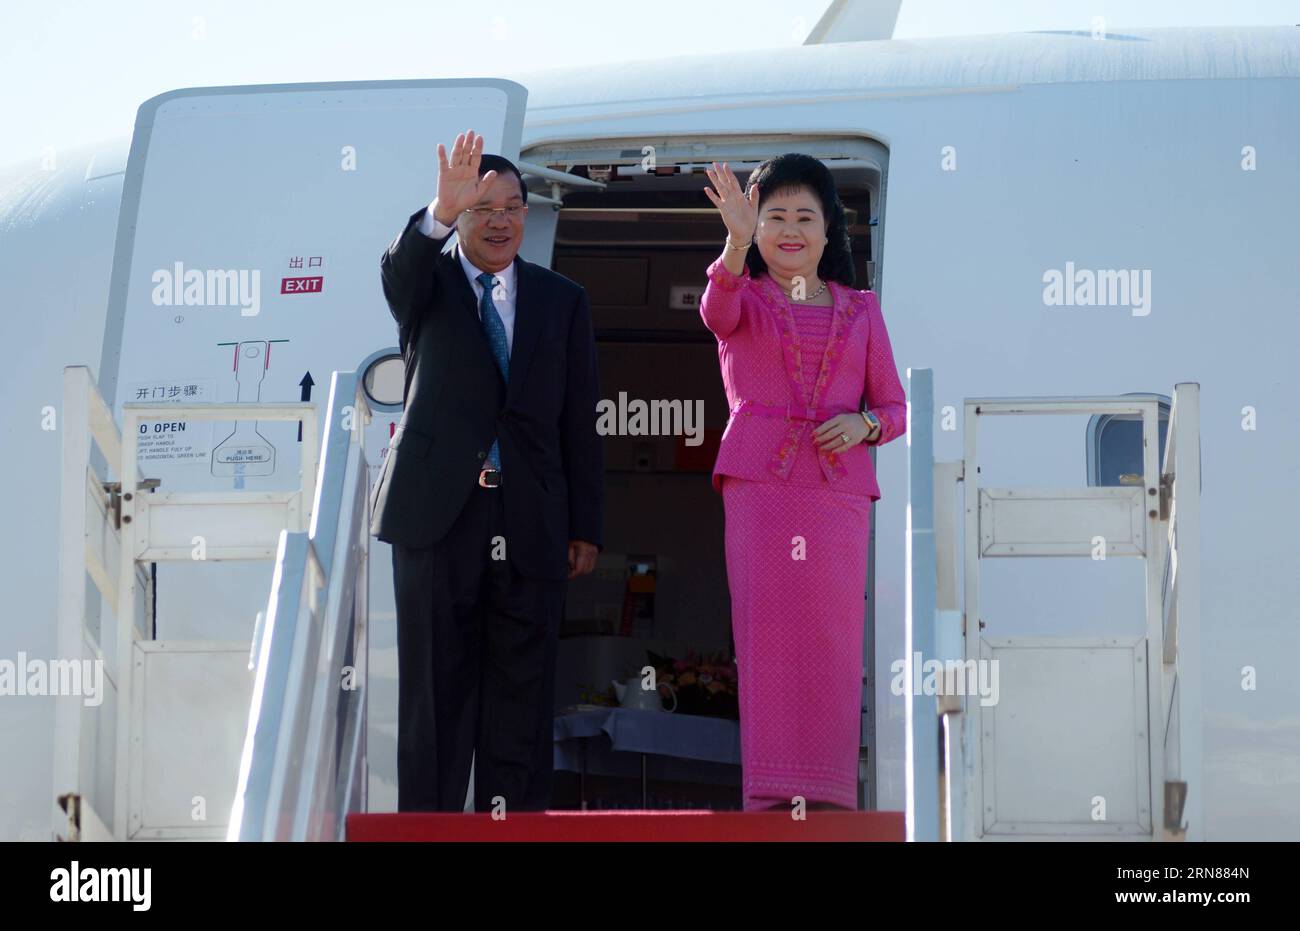 (151011) -- PHNOM PENH, -- le Premier ministre cambodgien Hun Sen (à gauche) et son épouse Bun Rany geste depuis l'avion avant leur départ à Phnom Penh, capitale du Cambodge, le 11 octobre 2015. Hun Sen a quitté Phnom Penh dimanche pour une série de réunions internationales à Macao et Beijing en Chine, qui se tiendront du 12 au 17 octobre, a déclaré un haut fonctionnaire. CAMBODGE-PHNOM PENH-PREMIER MINISTRE-DÉPART SOVANNARA PUBLICATIONXNOTXINXCHN Banque D'Images